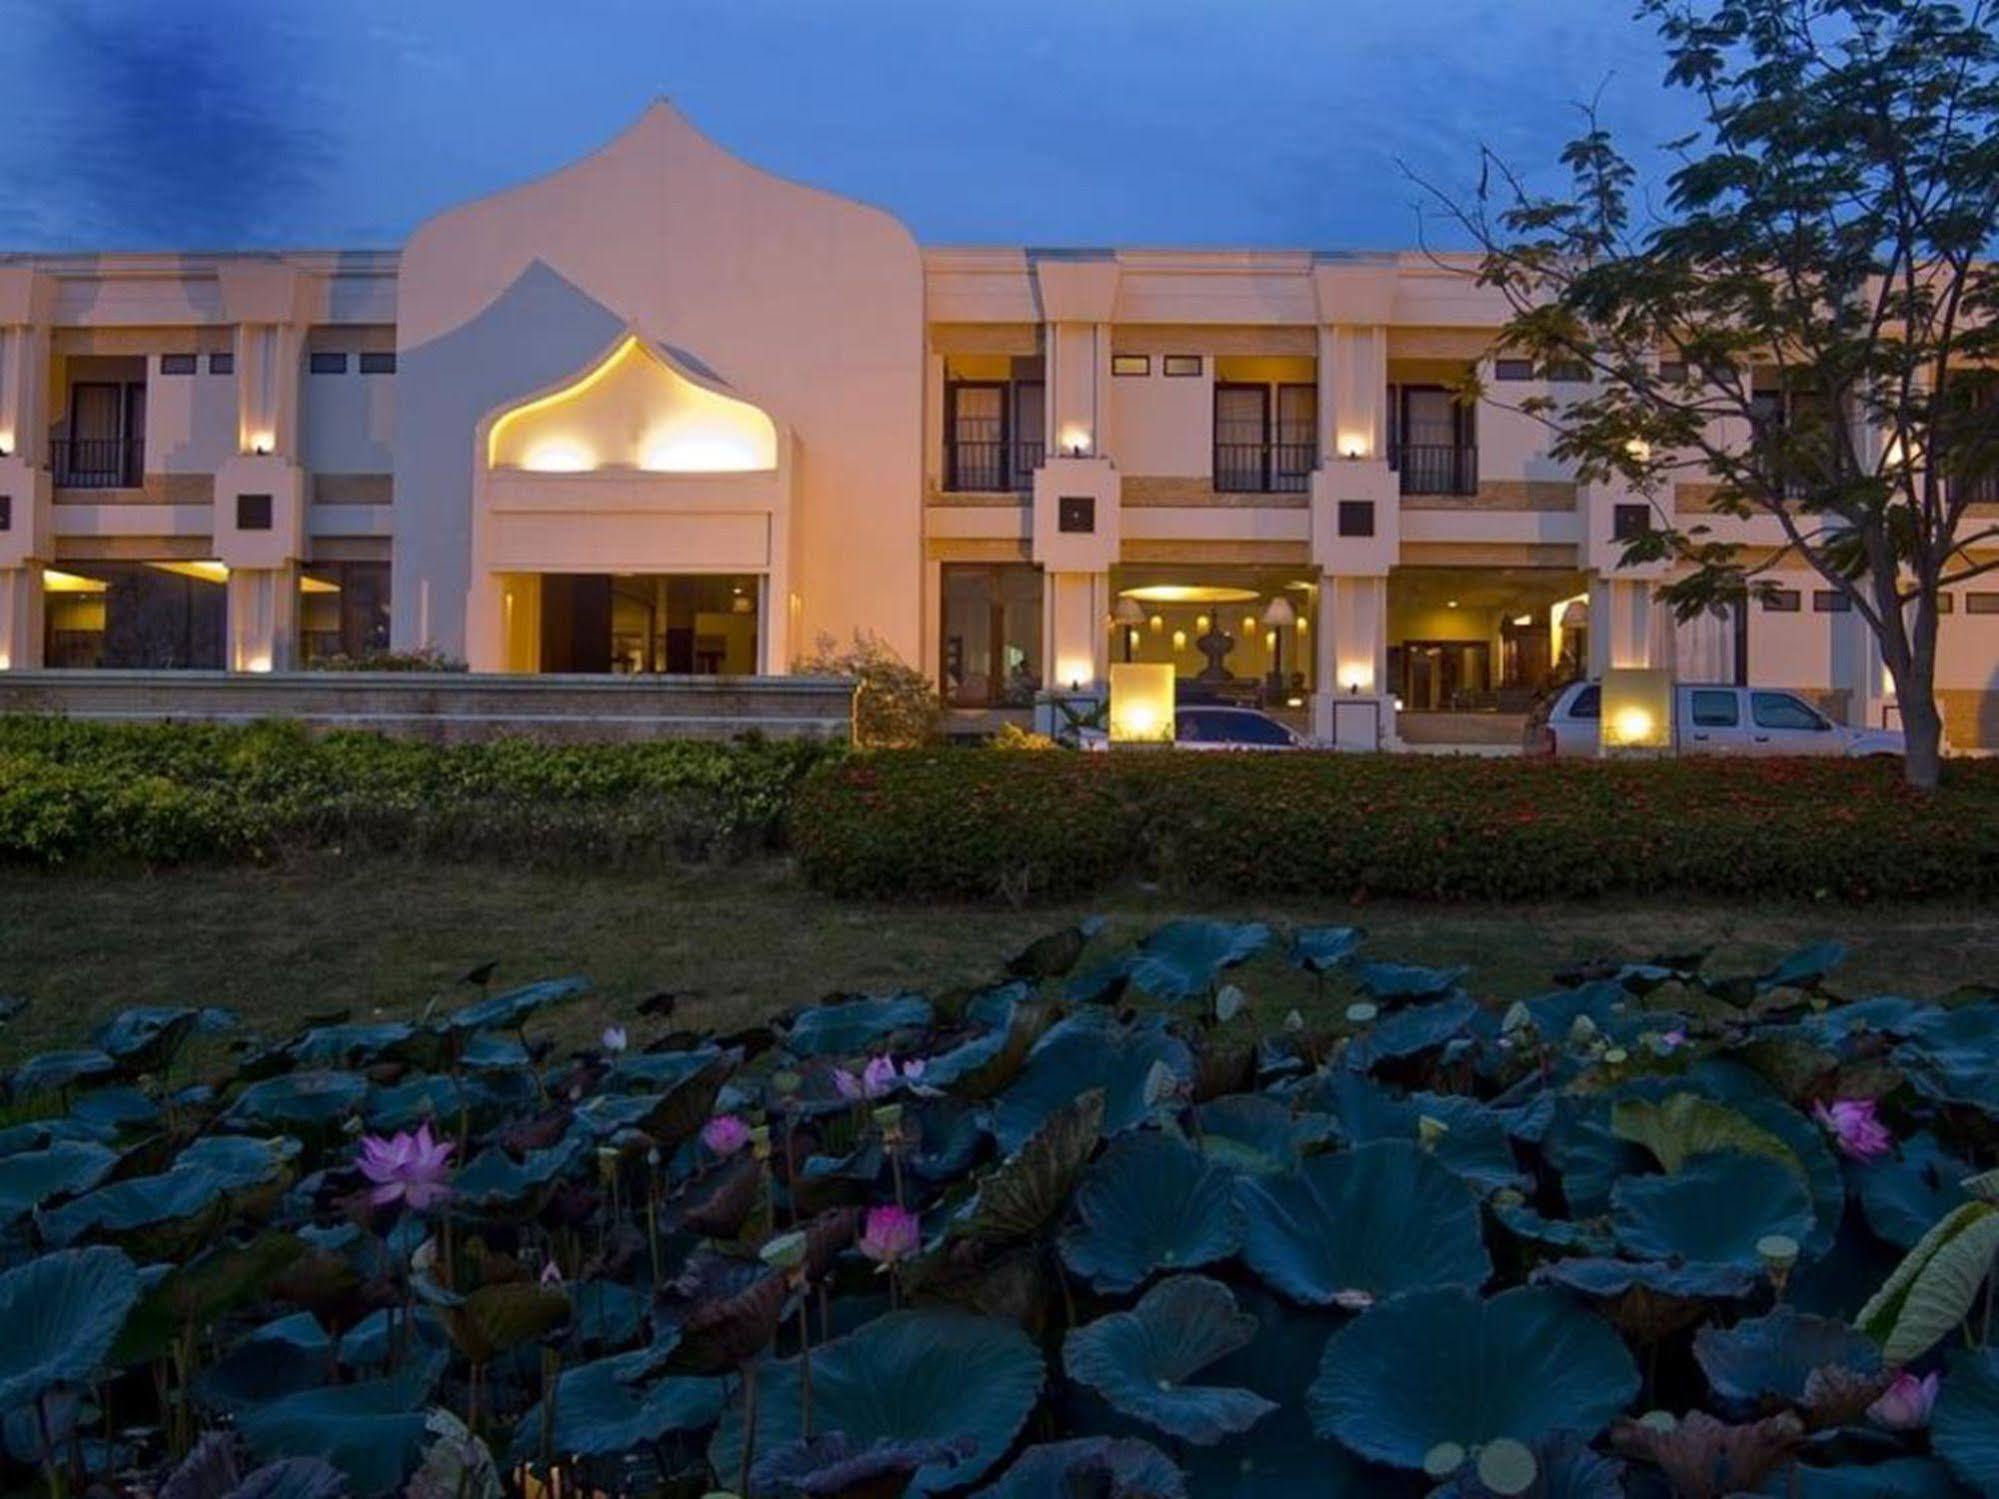 Ananda Museum Gallery Hotel, Sukhothai Exterior foto